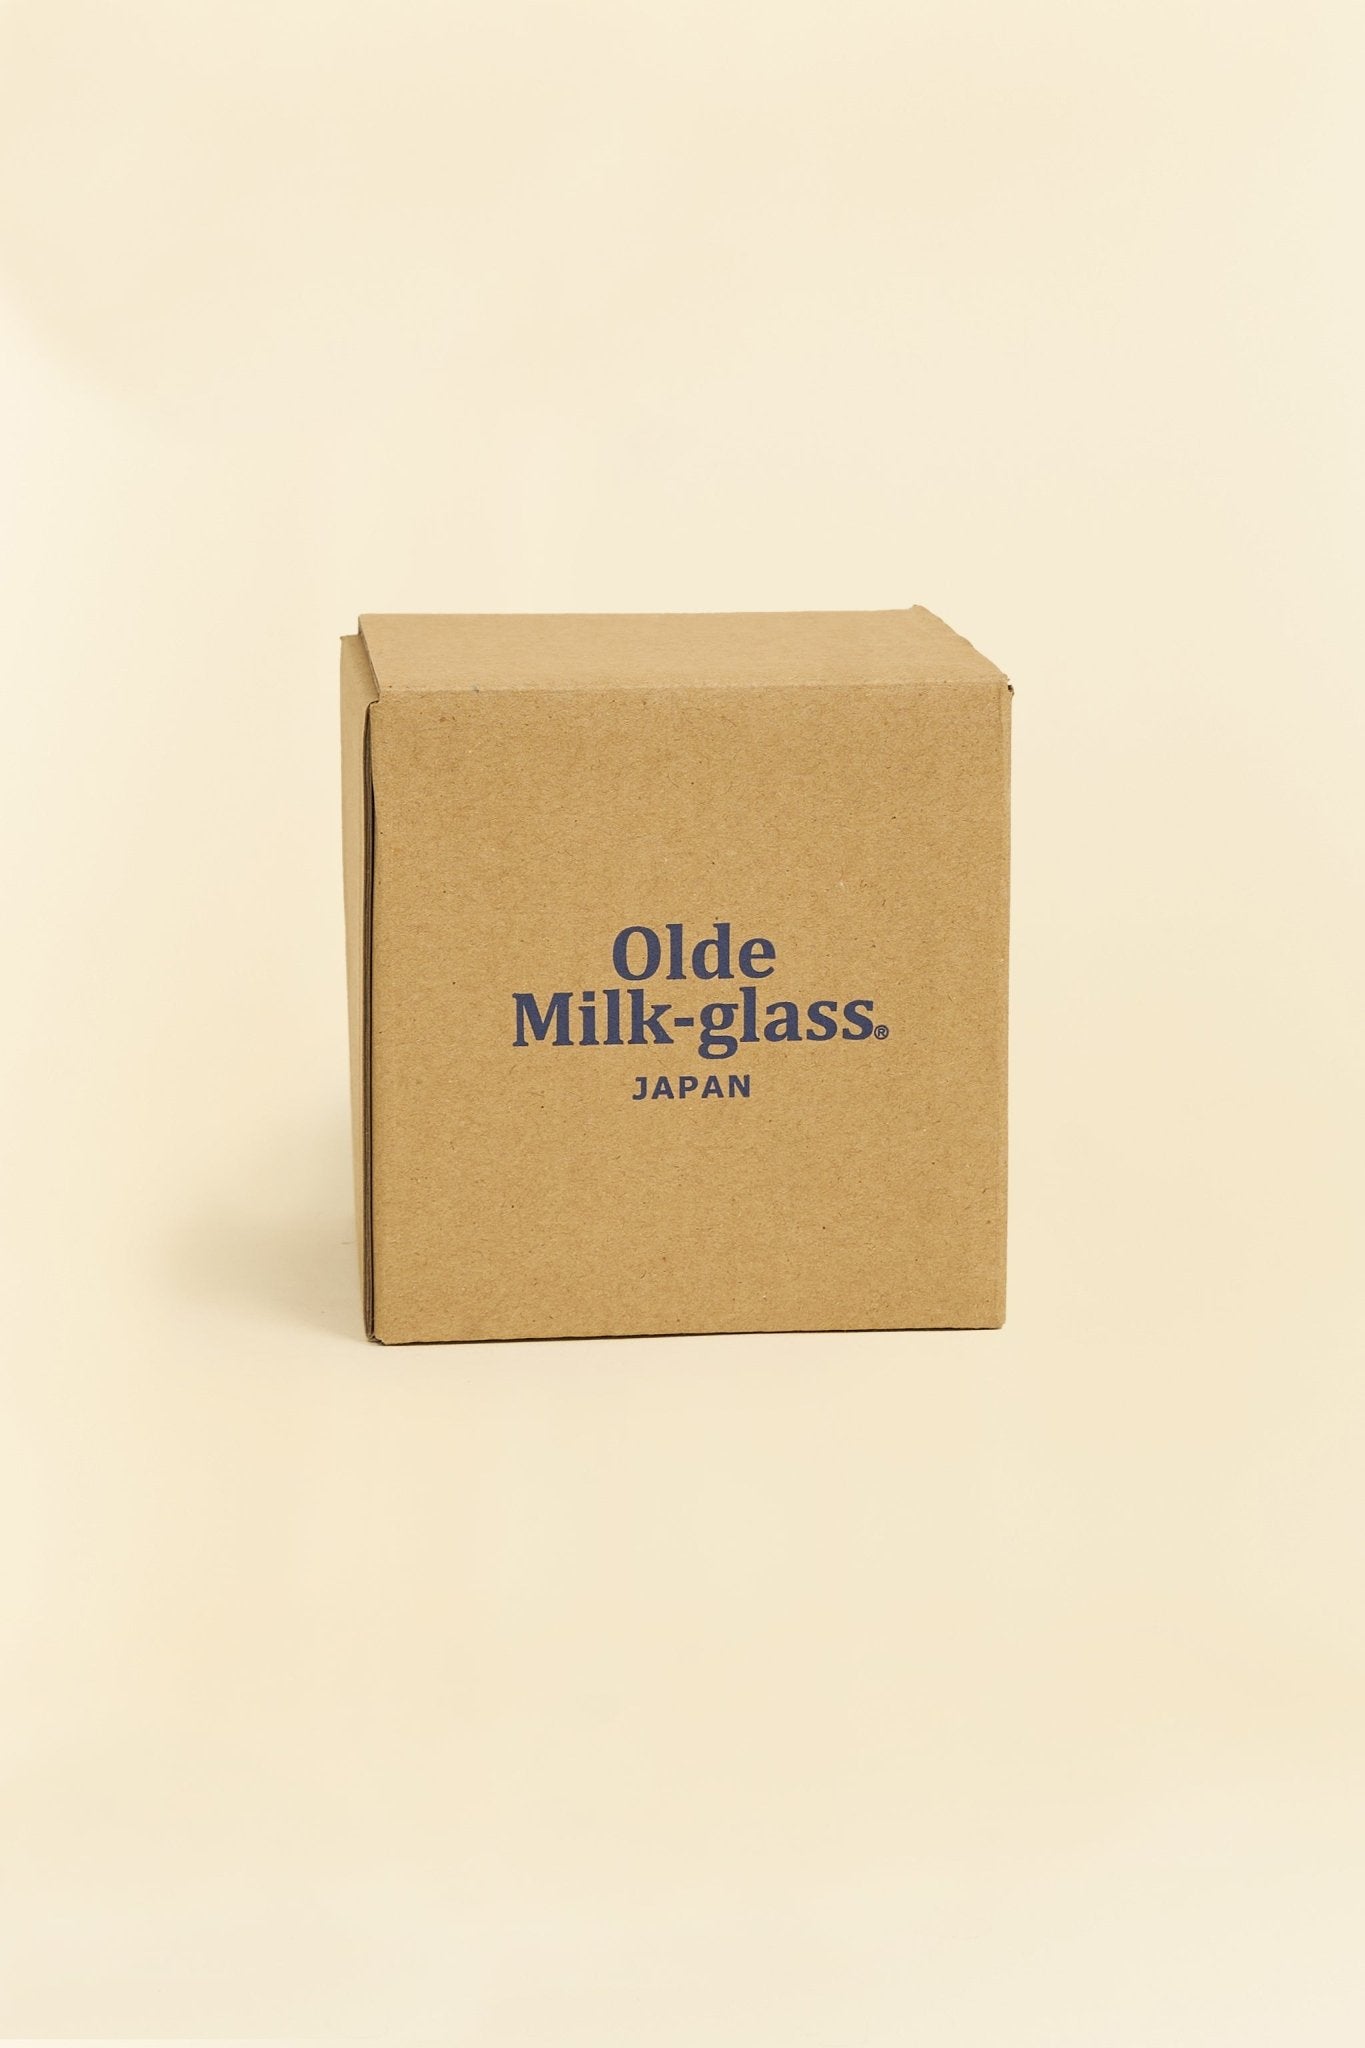 Godspeed Milk Glass 'Perseverance' Stacking Mug - Green -Godspeed - URAHARA